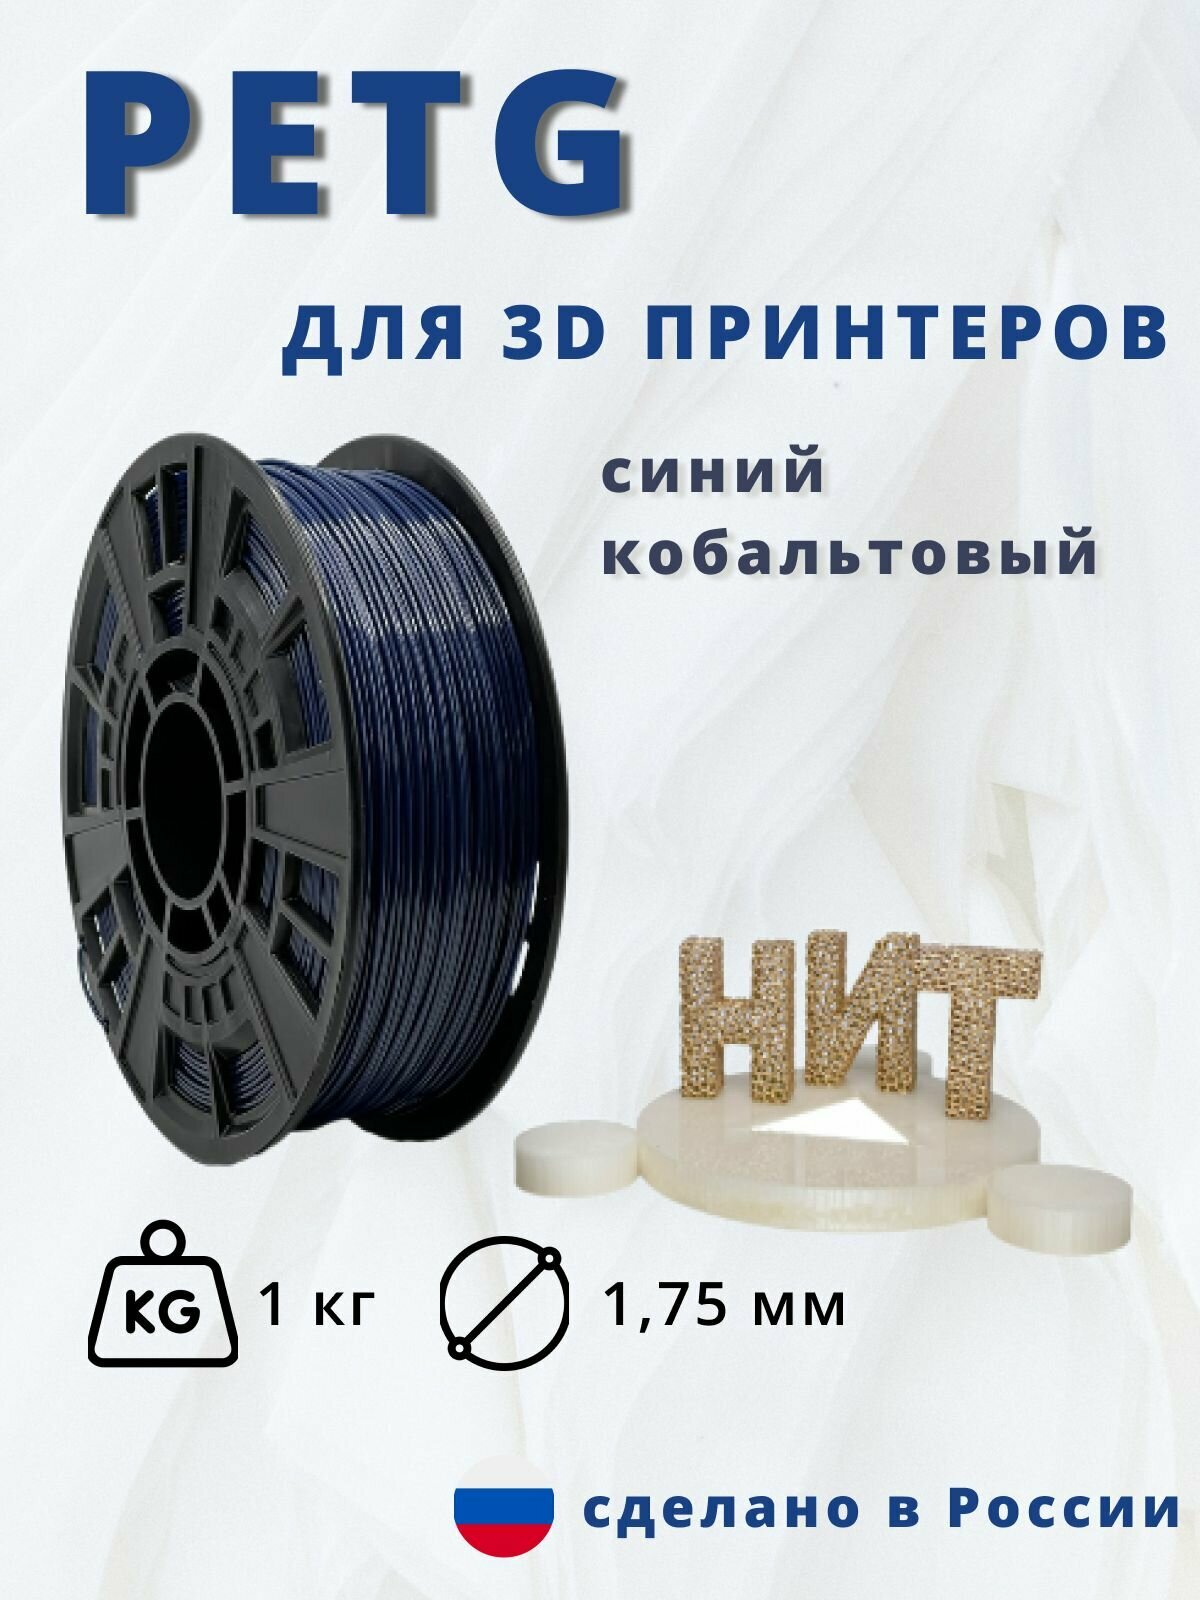 Пластик для 3D печати "НИТ" Petg синий кобальтовый 1 кг.